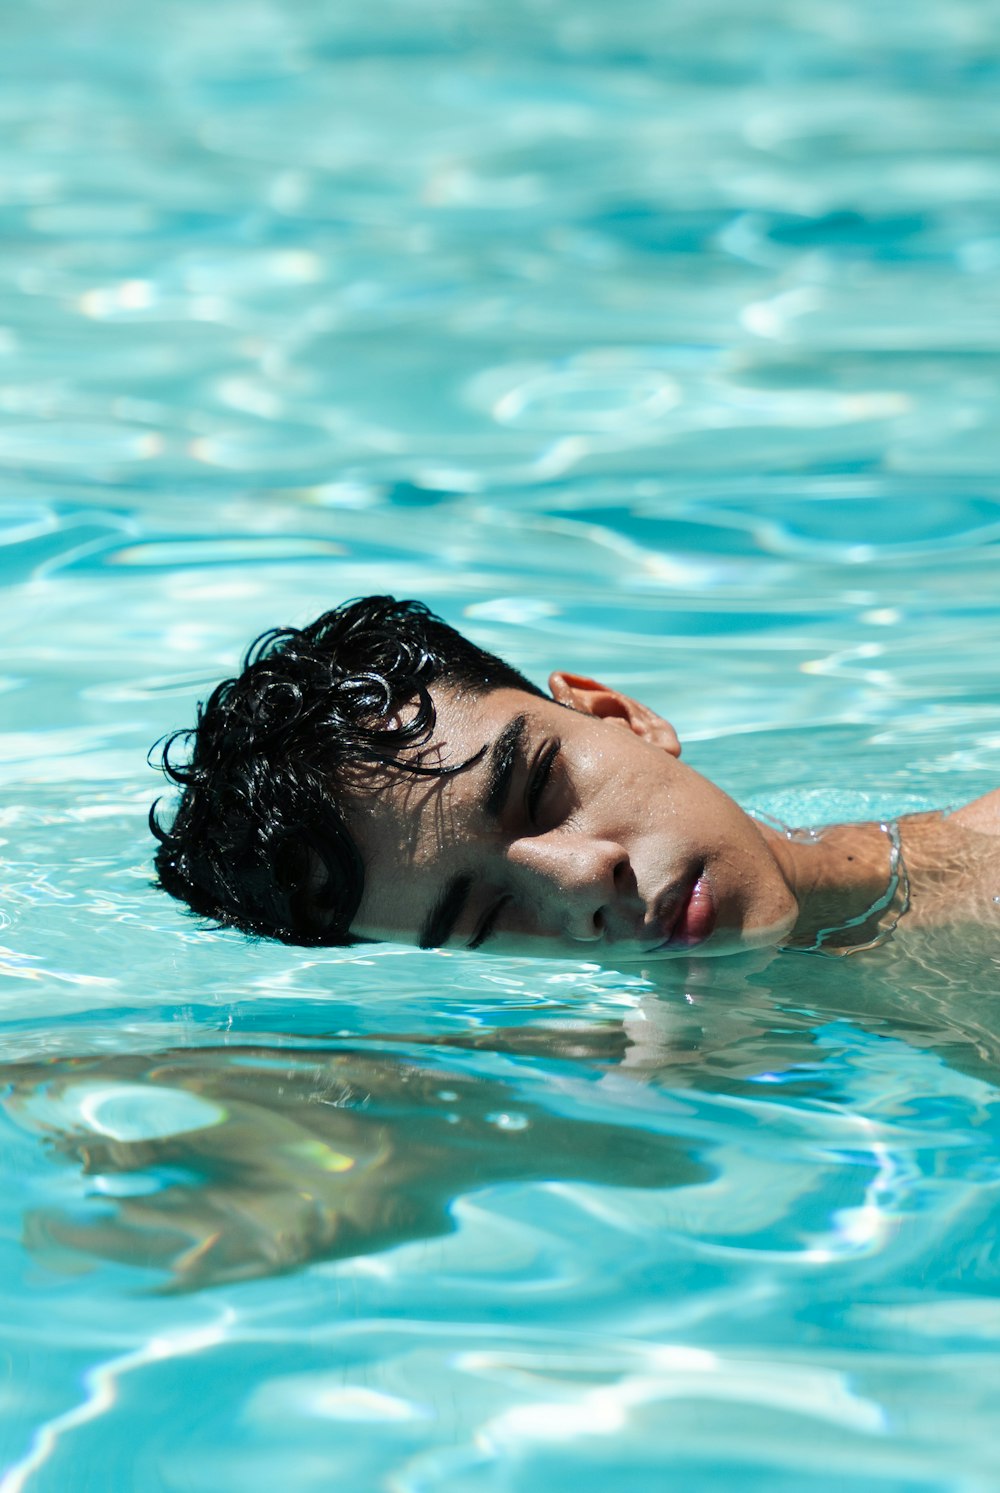 Un giovane che nuota in una pozza d'acqua